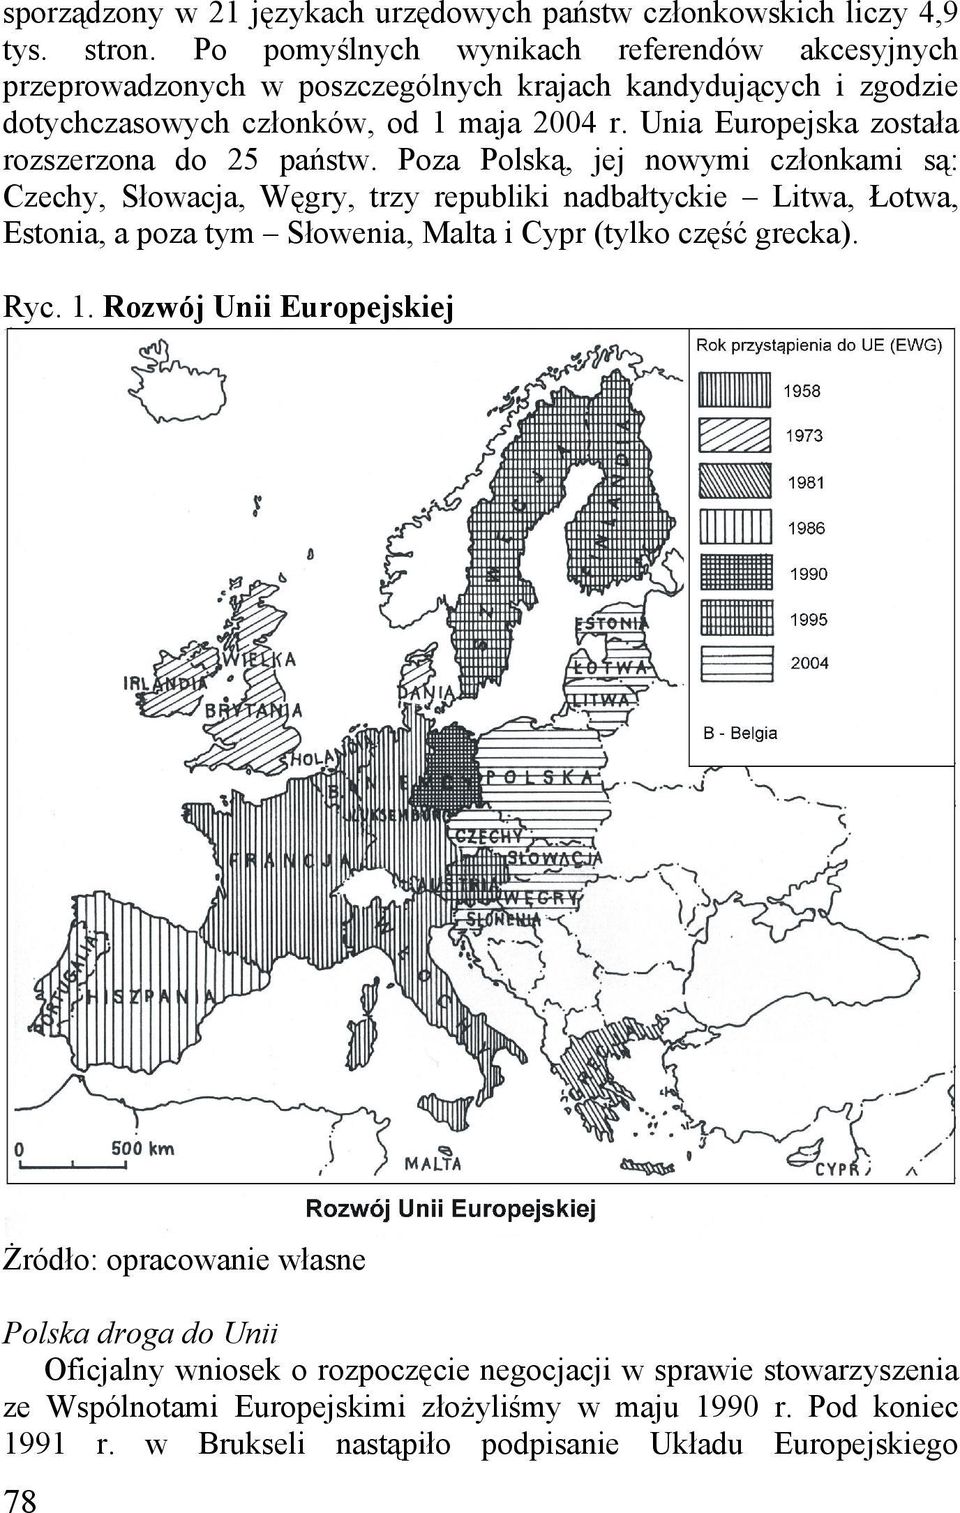 Unia Europejska została rozszerzona do 25 państw.